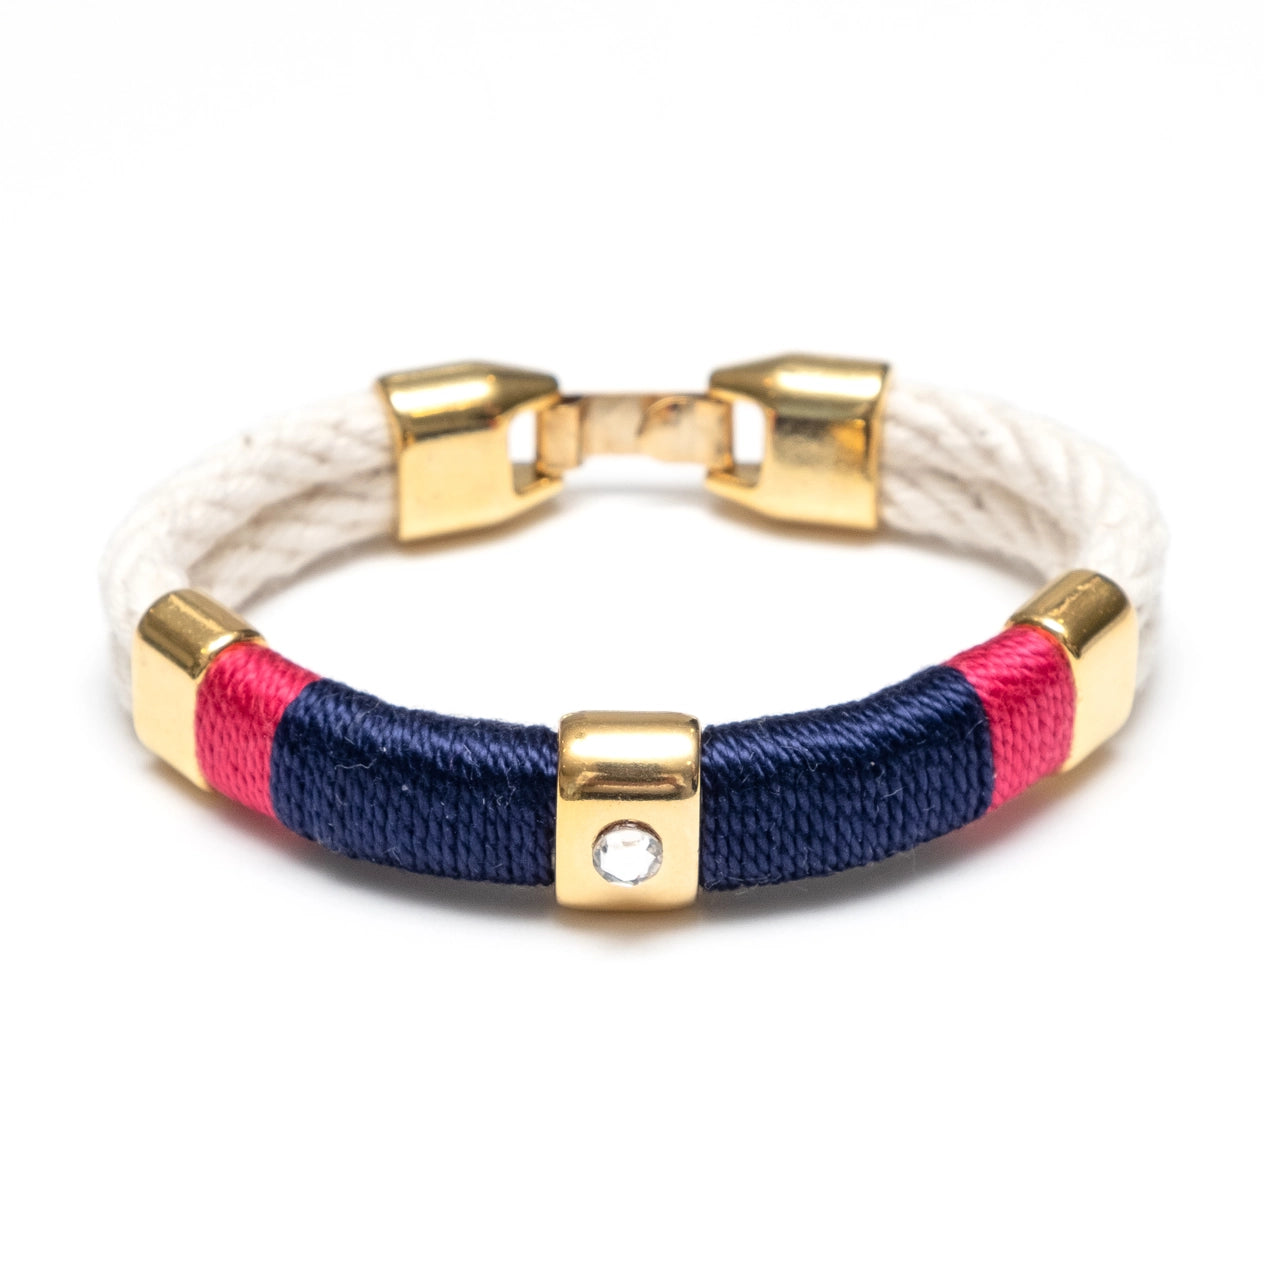 Kingston Bracelet by Allison Cole Jewelry